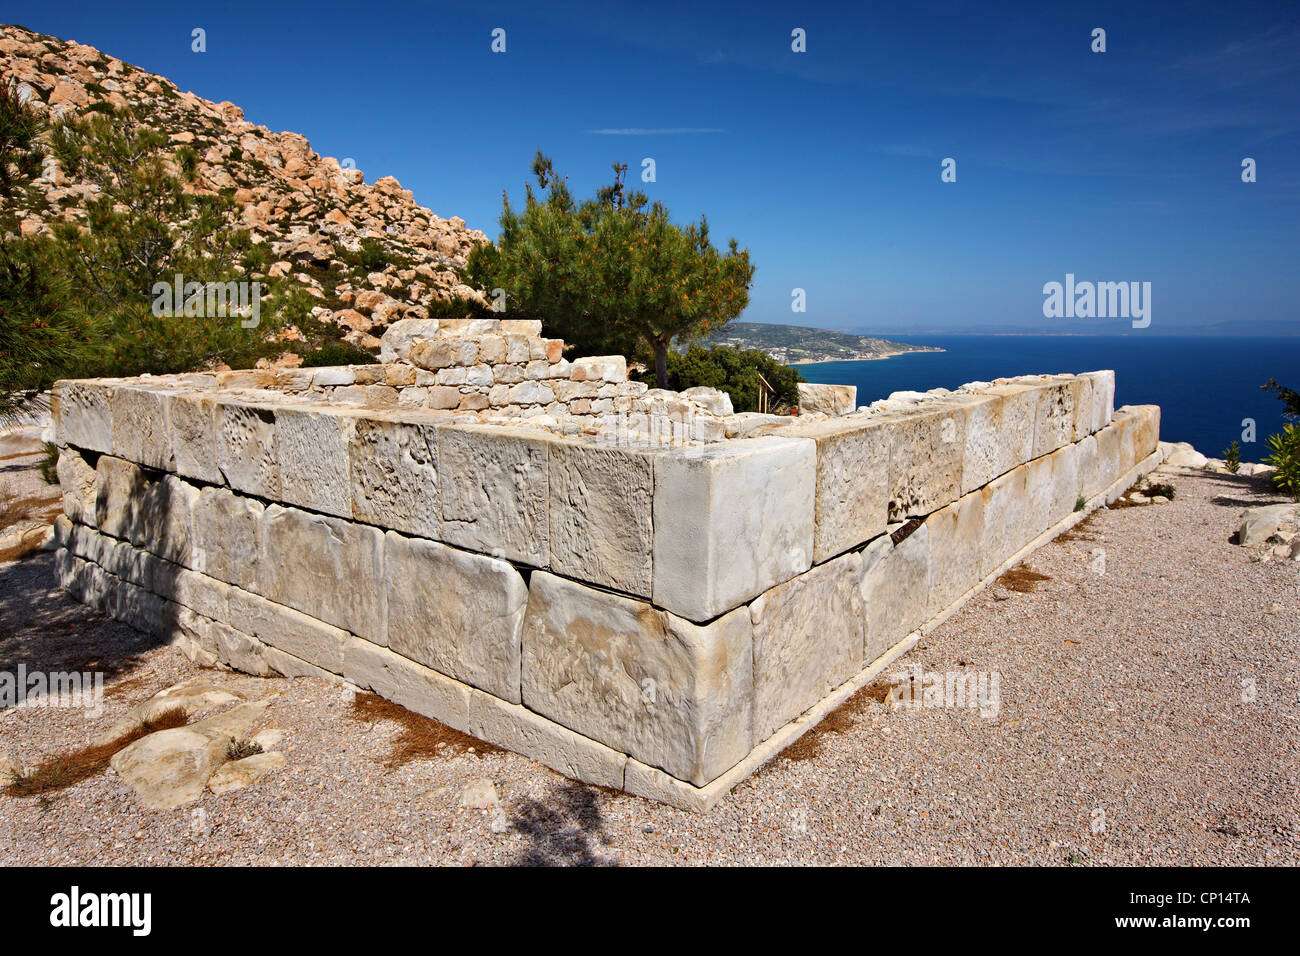 L'ancien temple d'Athéna, au site archéologique de Emboreios, Chios (ou '' Hios island), au nord-est de la mer Égée, Grèce. Banque D'Images